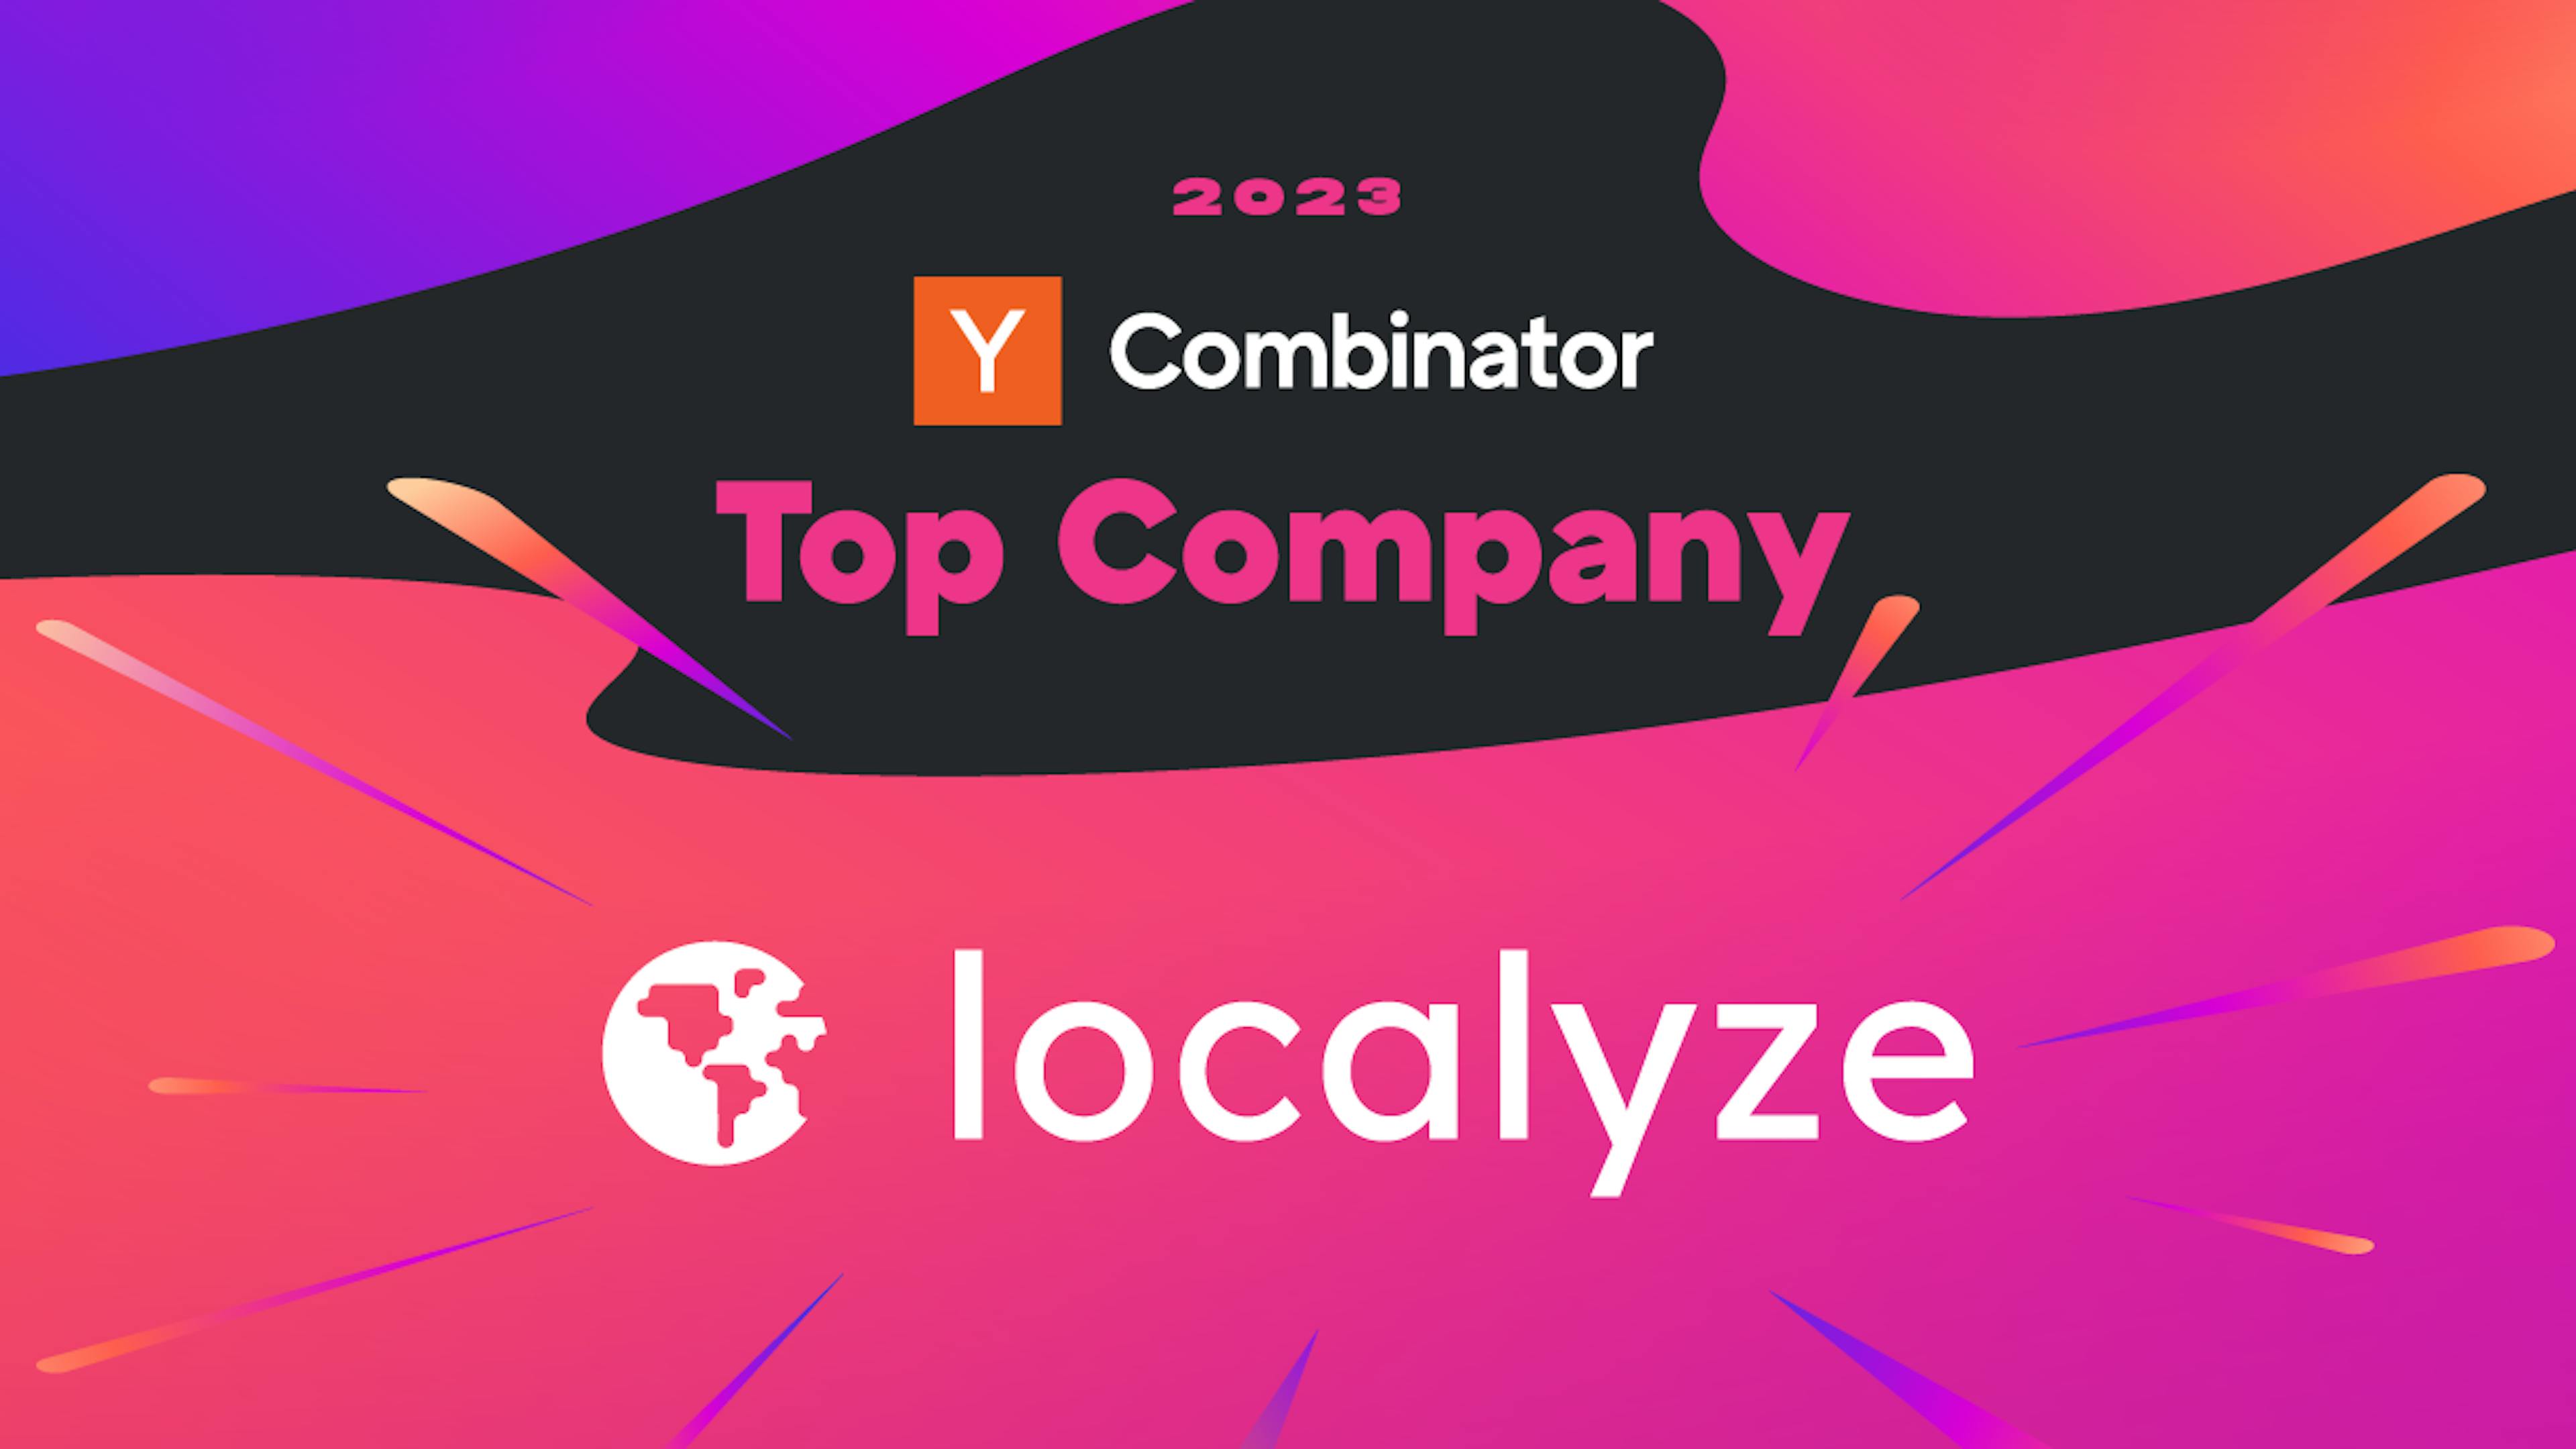 Y Combinator Top Company badge